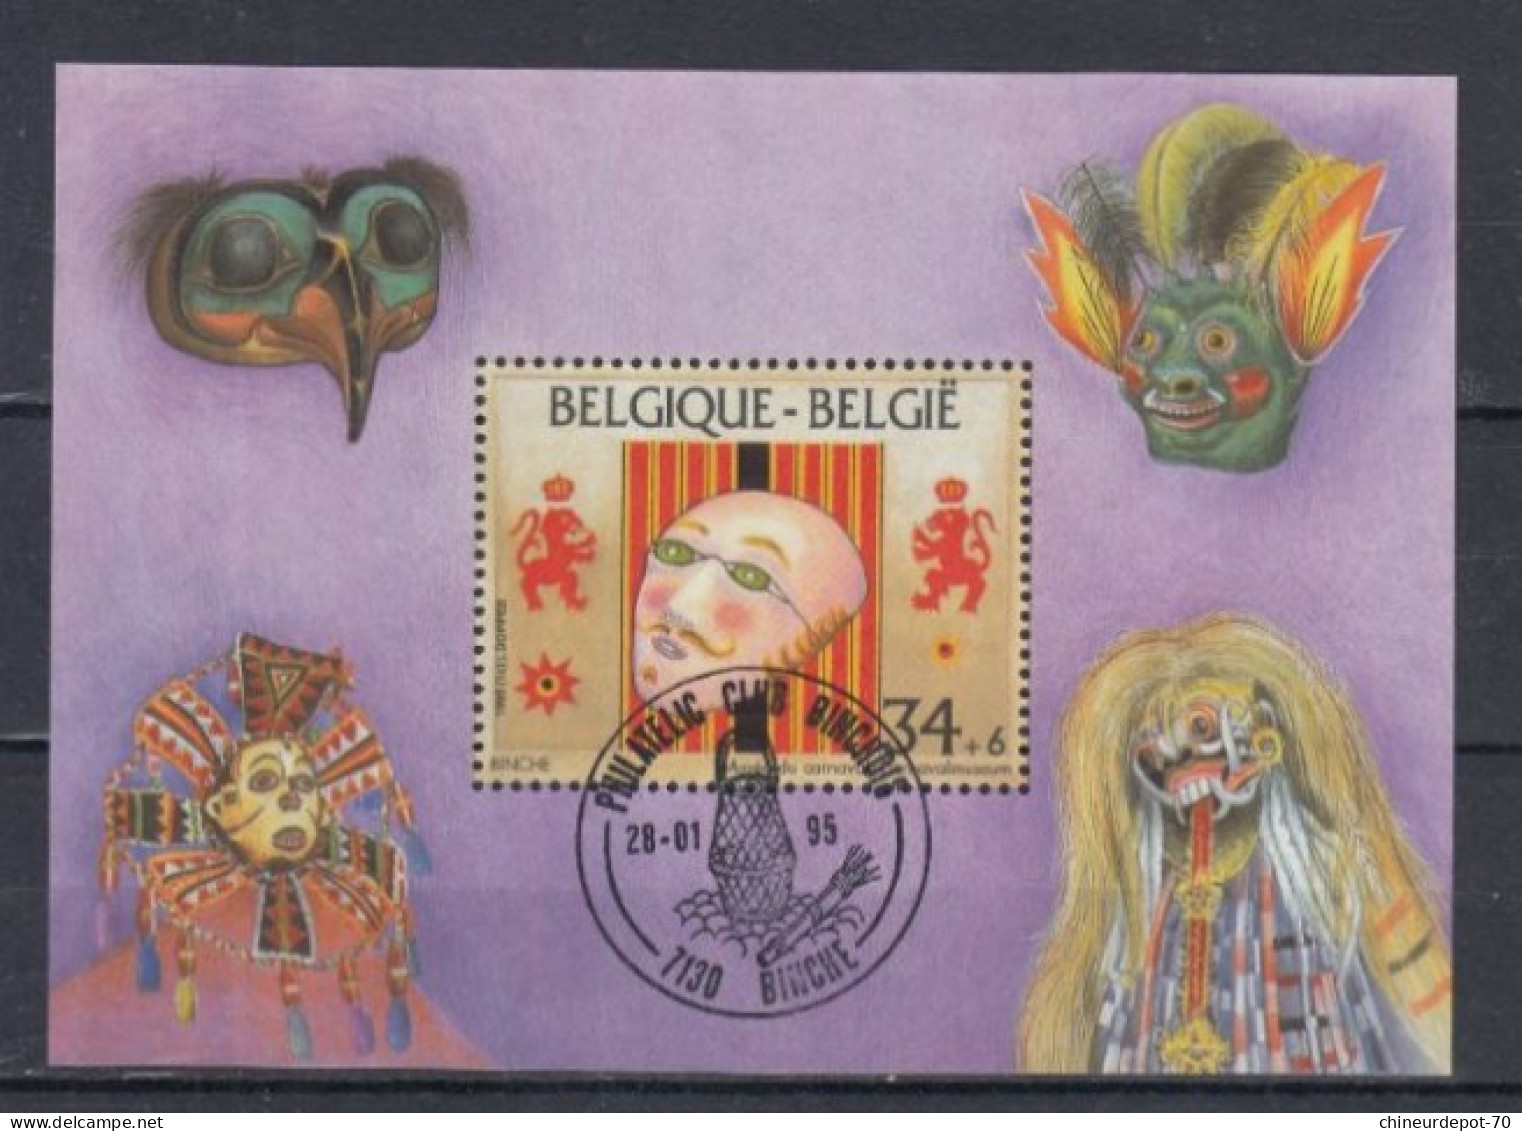 Belge BLOC MASQUE BINCHE 1995 - Gebraucht